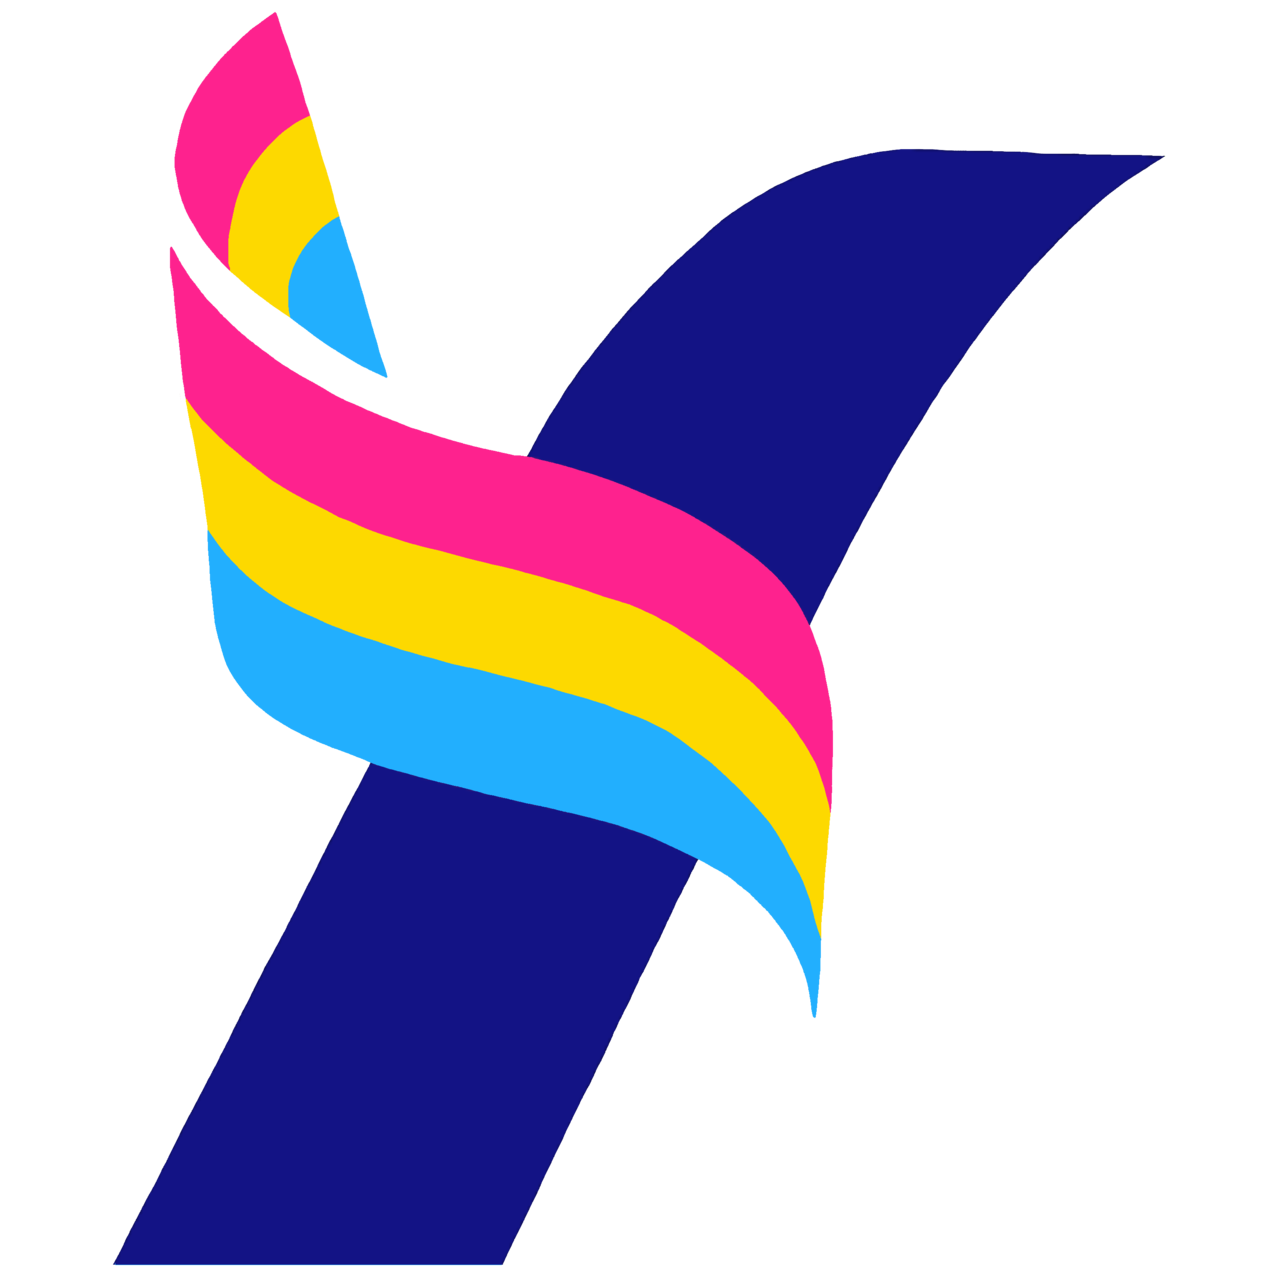 Yang2020 Official — Yang Pride Logo Set1280 x 1278